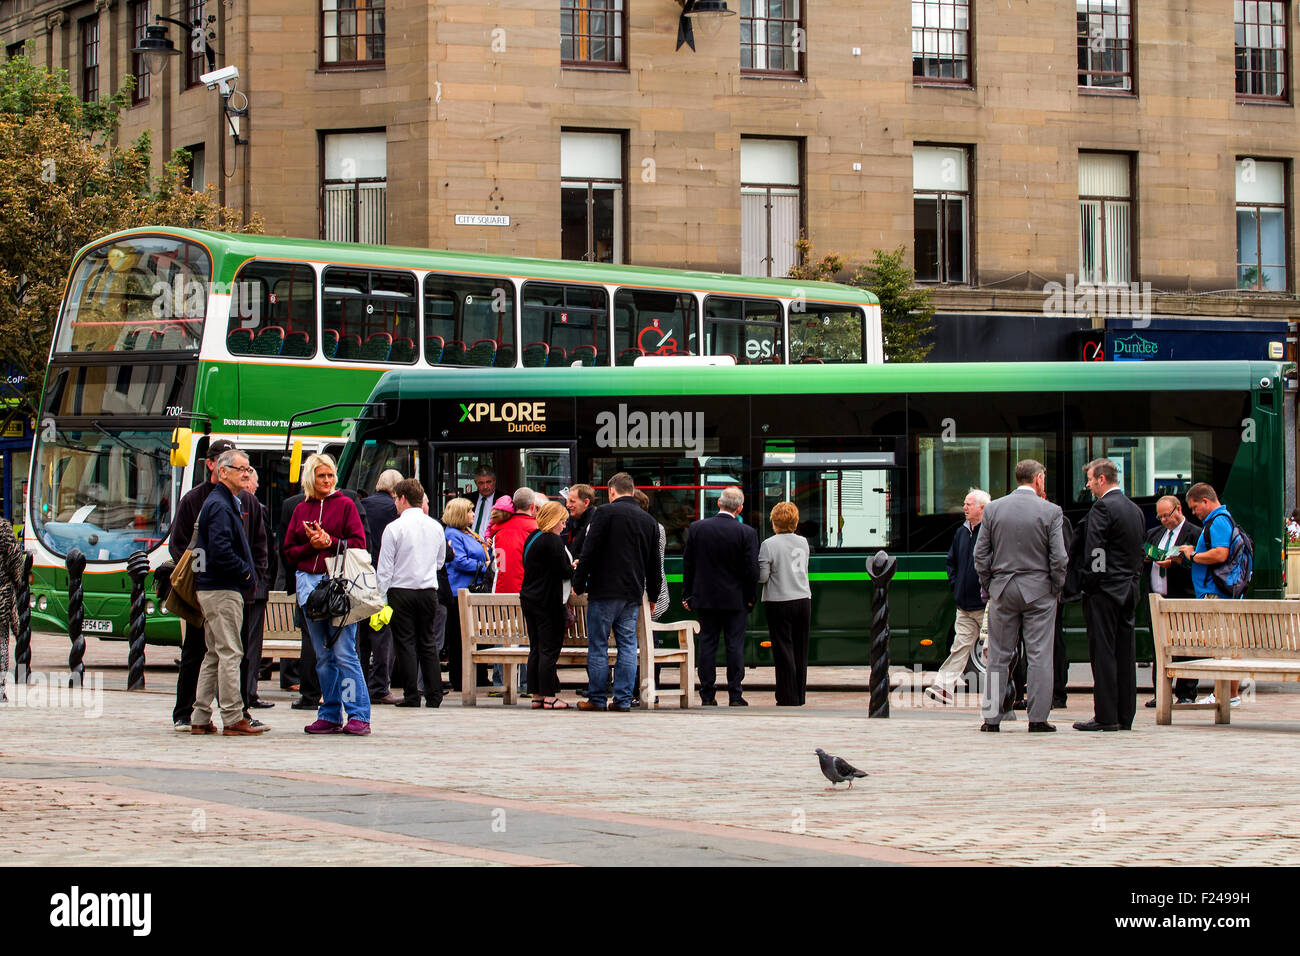 Dundee, Tayside, Scozia, Regno Unito, 11 settembre 2015. Xplore Dundee nuovo servizio di autobus urbano sarà in funzione il 13 settembre 2015. Xplore Dundee è parte del National Express Group che sarà una nuova Dundee il servizio di trasporto pubblico con la nuova flotta di autobus per la città. Credito: Dundee fotografico / Alamy Live News. Foto Stock